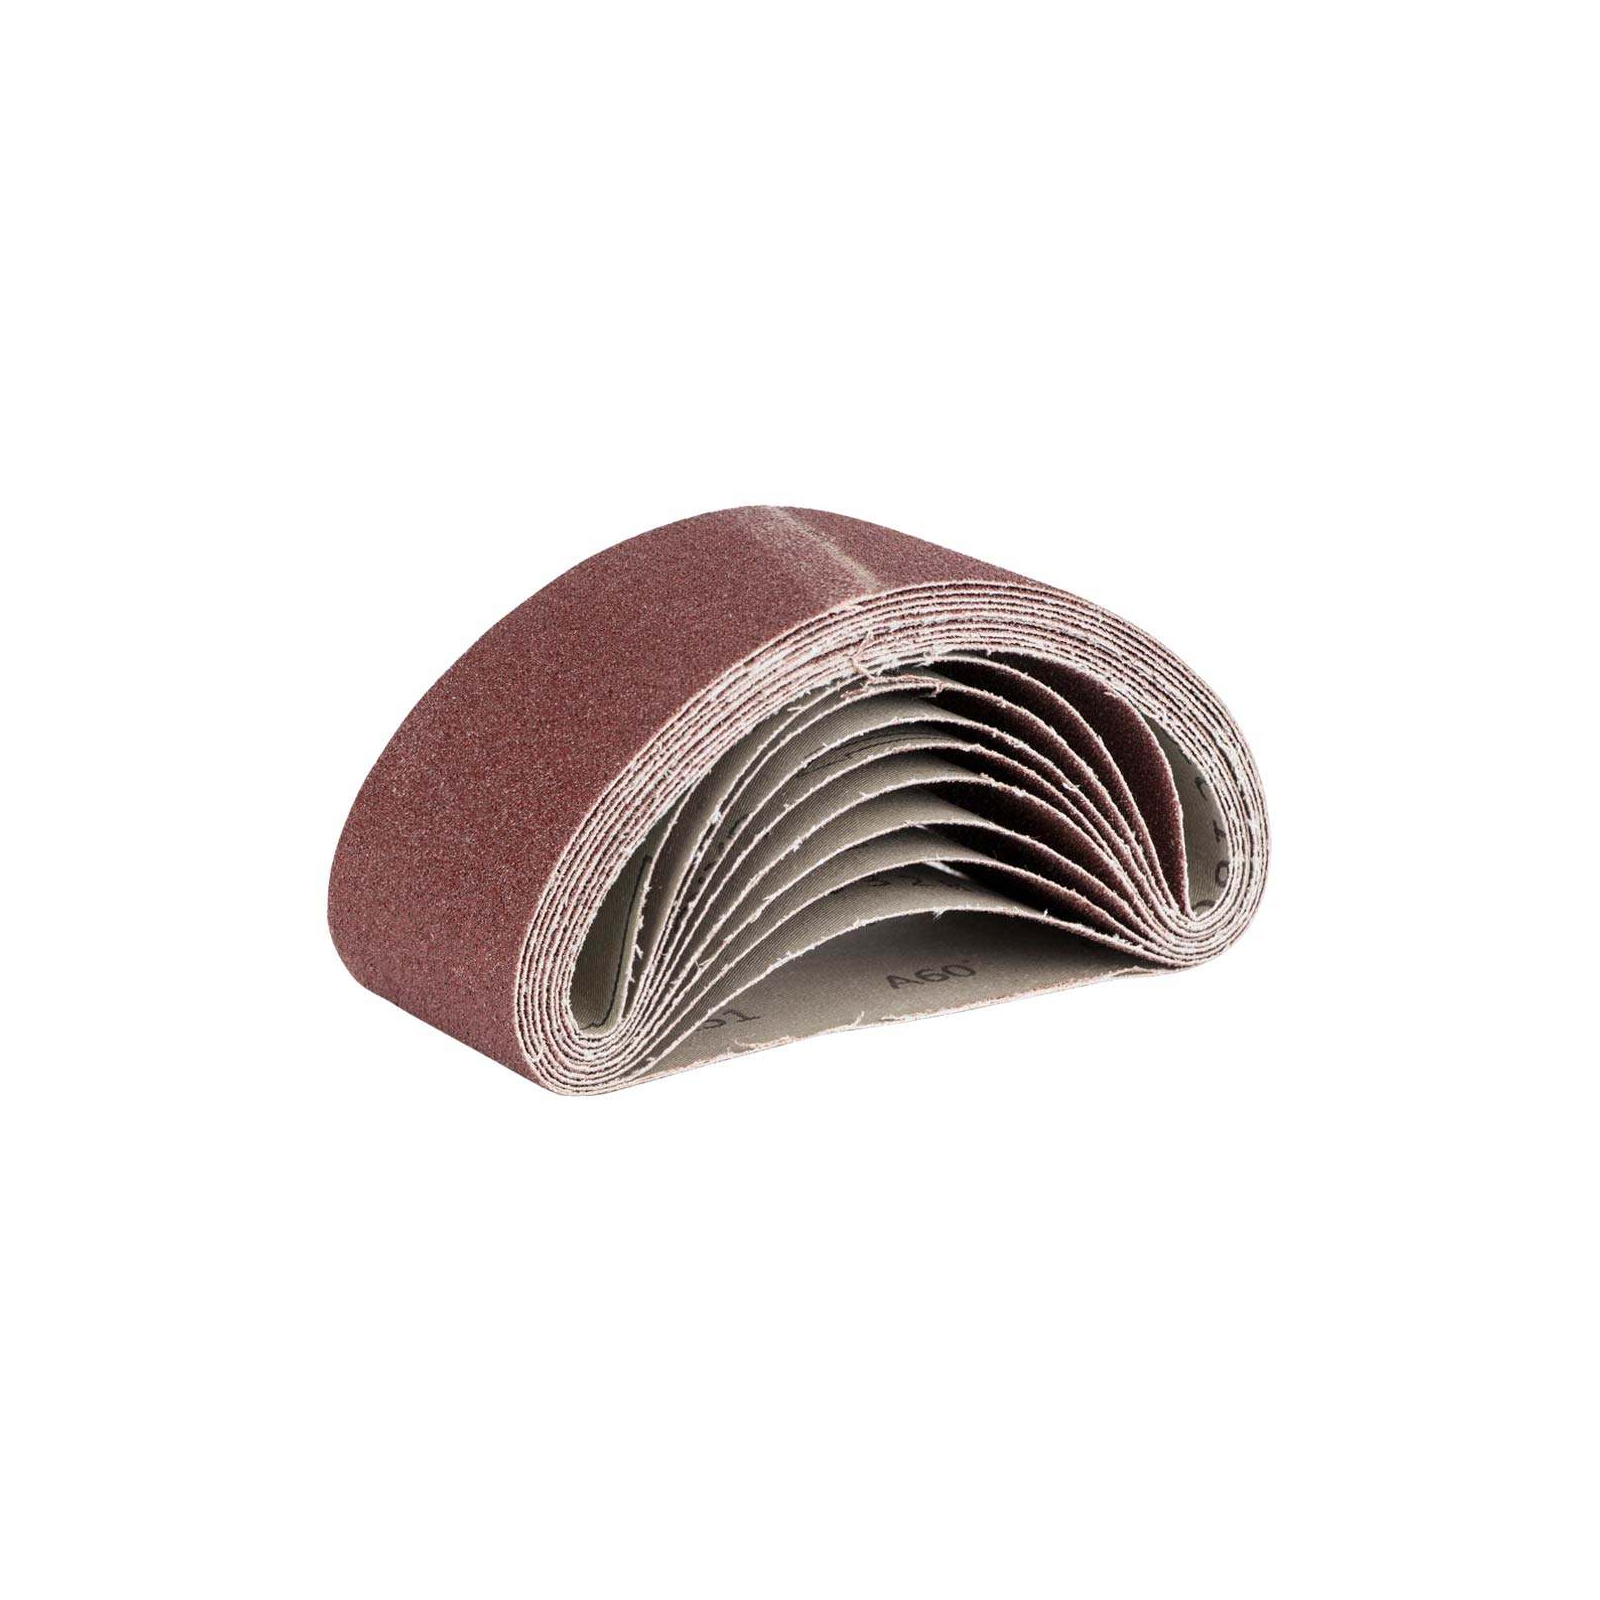 Наждачная бумага Sigma лента кольцевая 75x457мм P180 (10шт) (9151161)